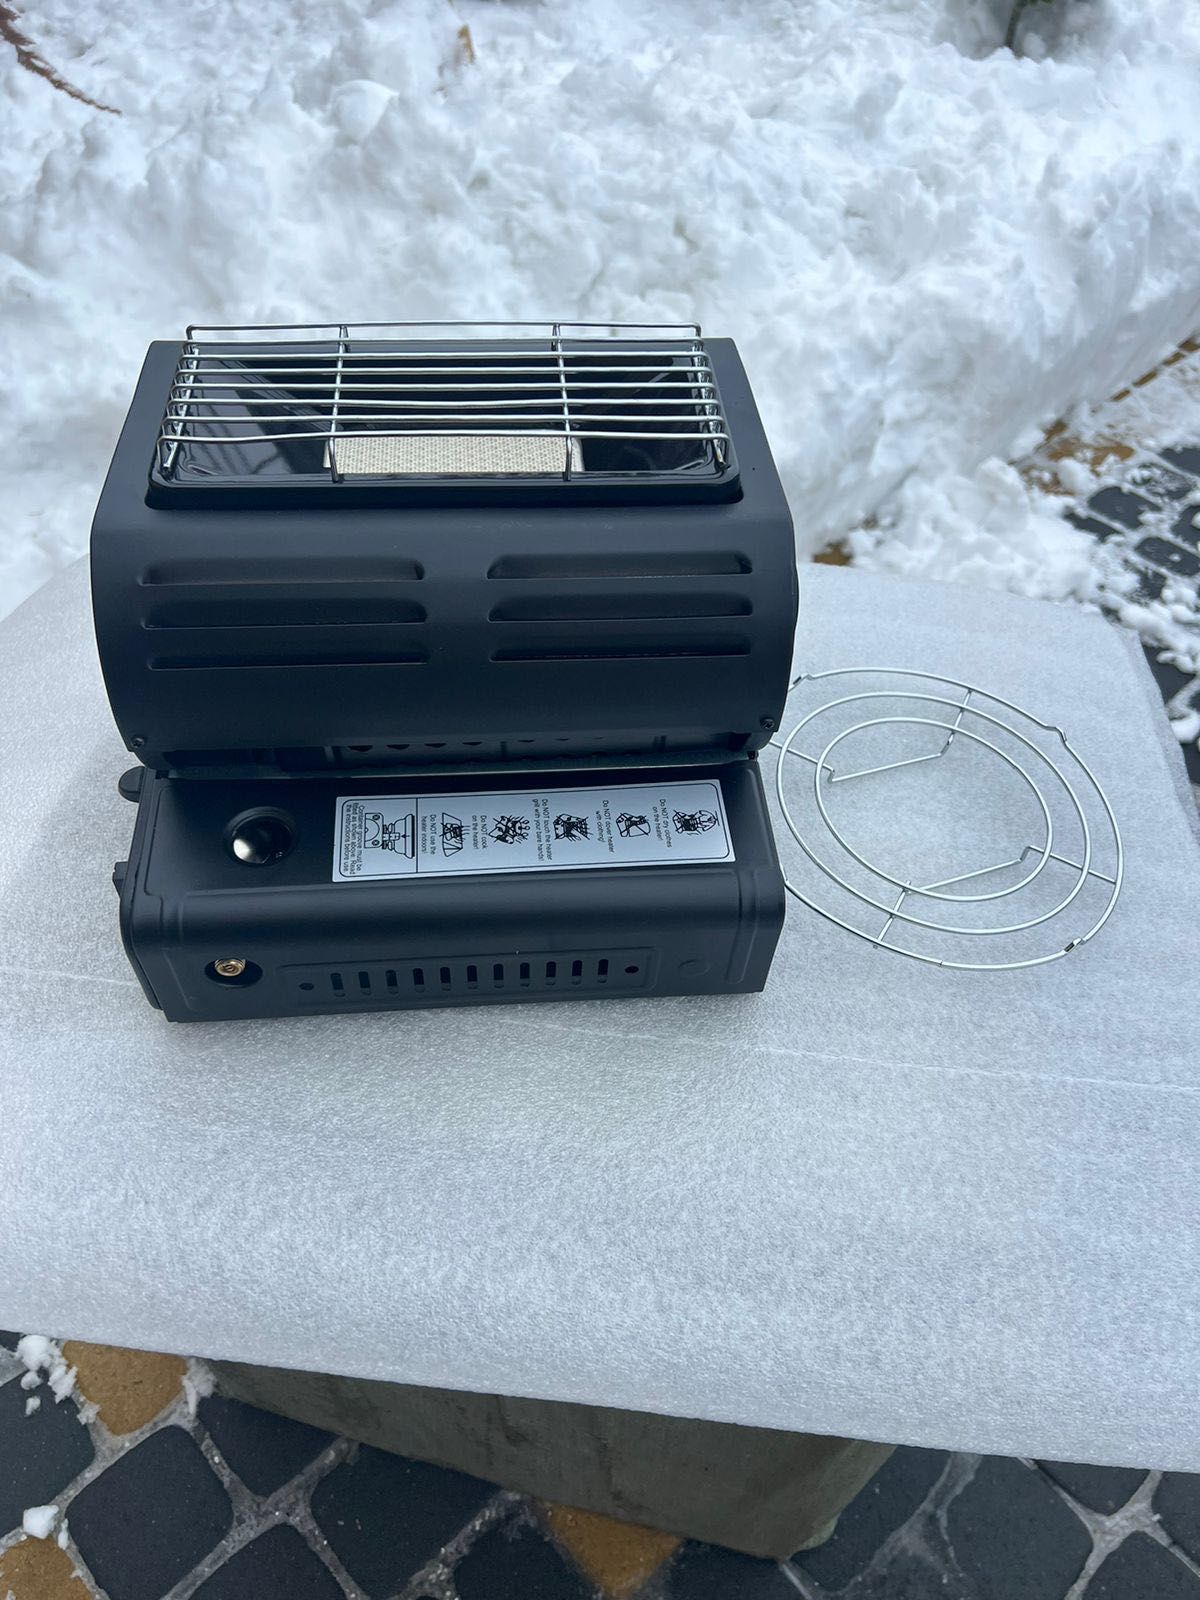 ГАЗОВА ПЛИТА-ОБІГРІВАЧ Yanchuan portable gas heater yc-808b